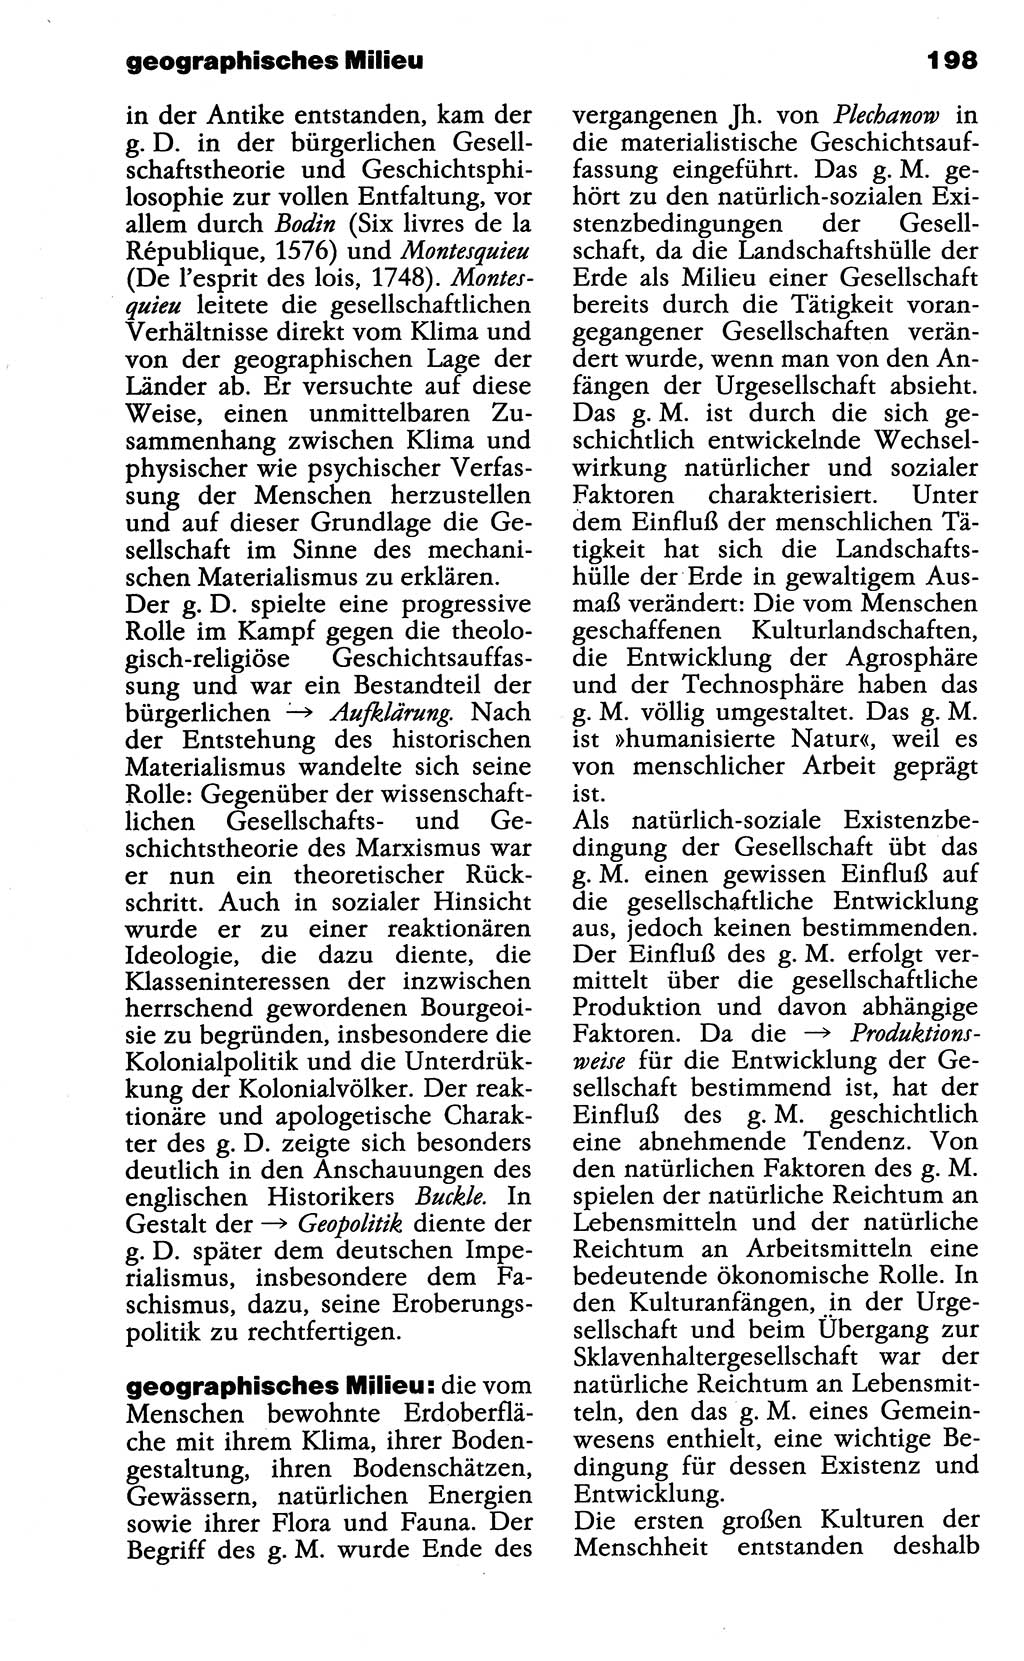 Wörterbuch der marxistisch-leninistischen Philosophie [Deutsche Demokratische Republik (DDR)] 1985, Seite 198 (Wb. ML Phil. DDR 1985, S. 198)